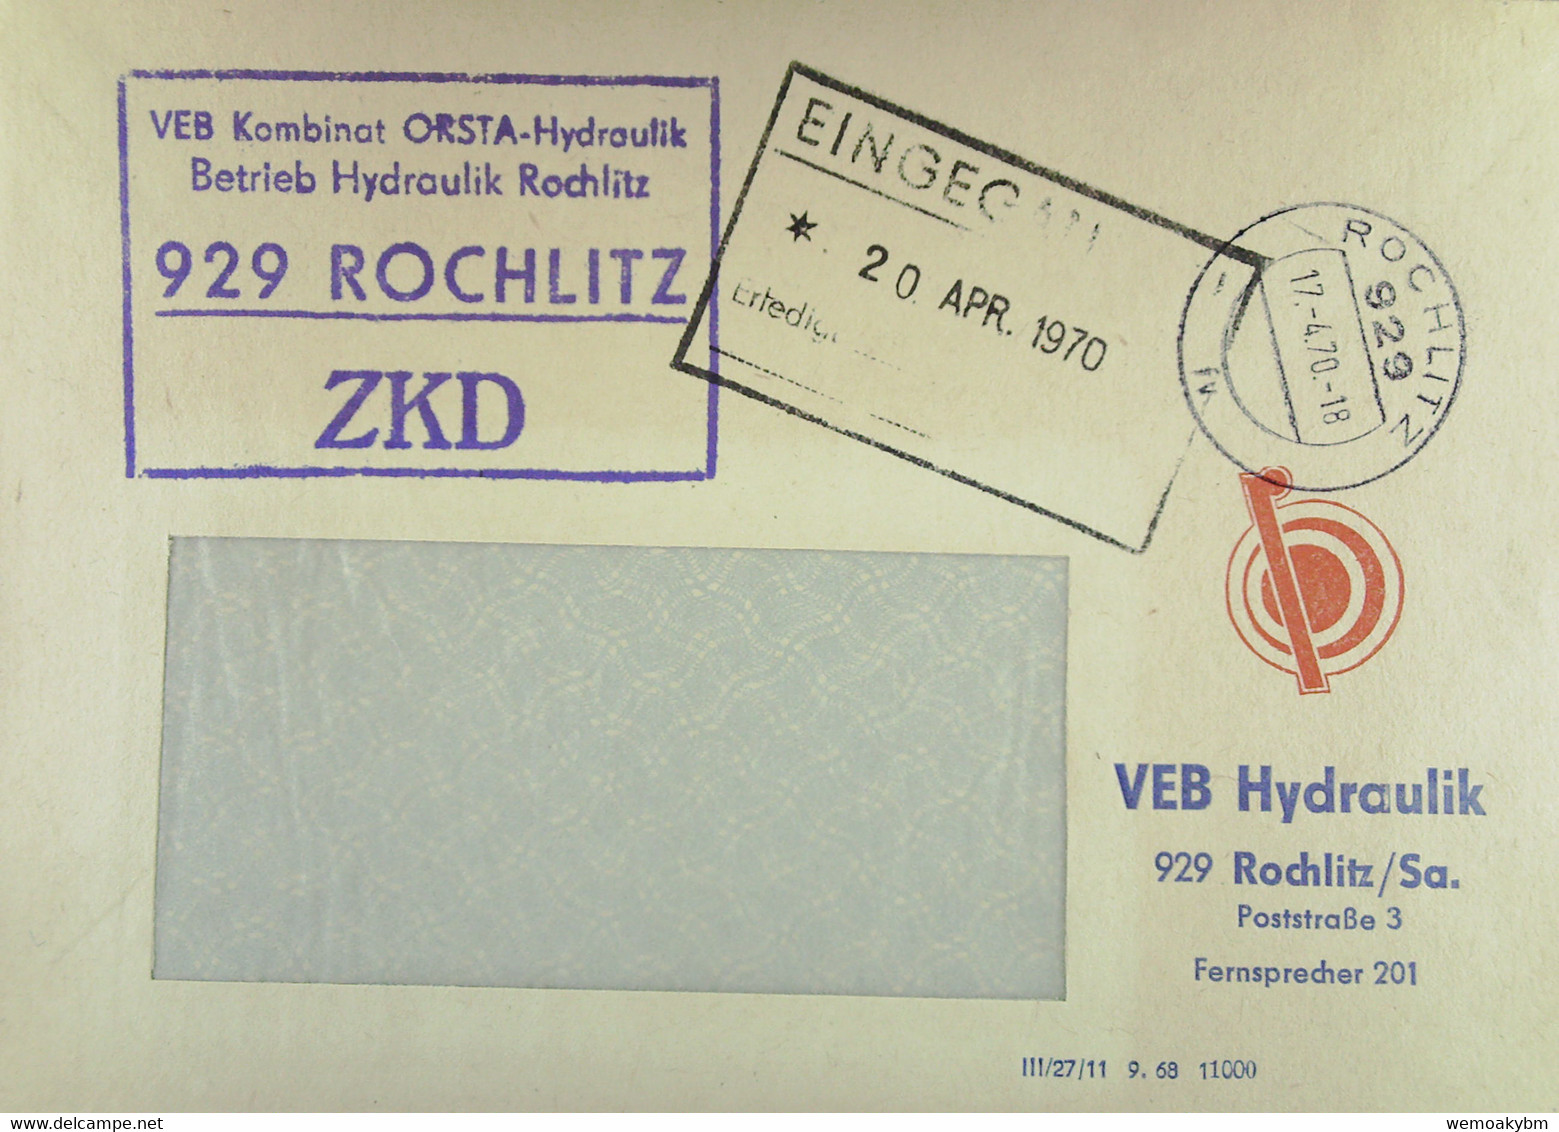 Fern-Brief Mit ZKD-Kastenstempel "VEB Kombinat OSTRA-Hydraulik Betrieb Hydraulik 929 ROCHLITZ" Vom 17.4.70 Nach Dresden - Lettres & Documents